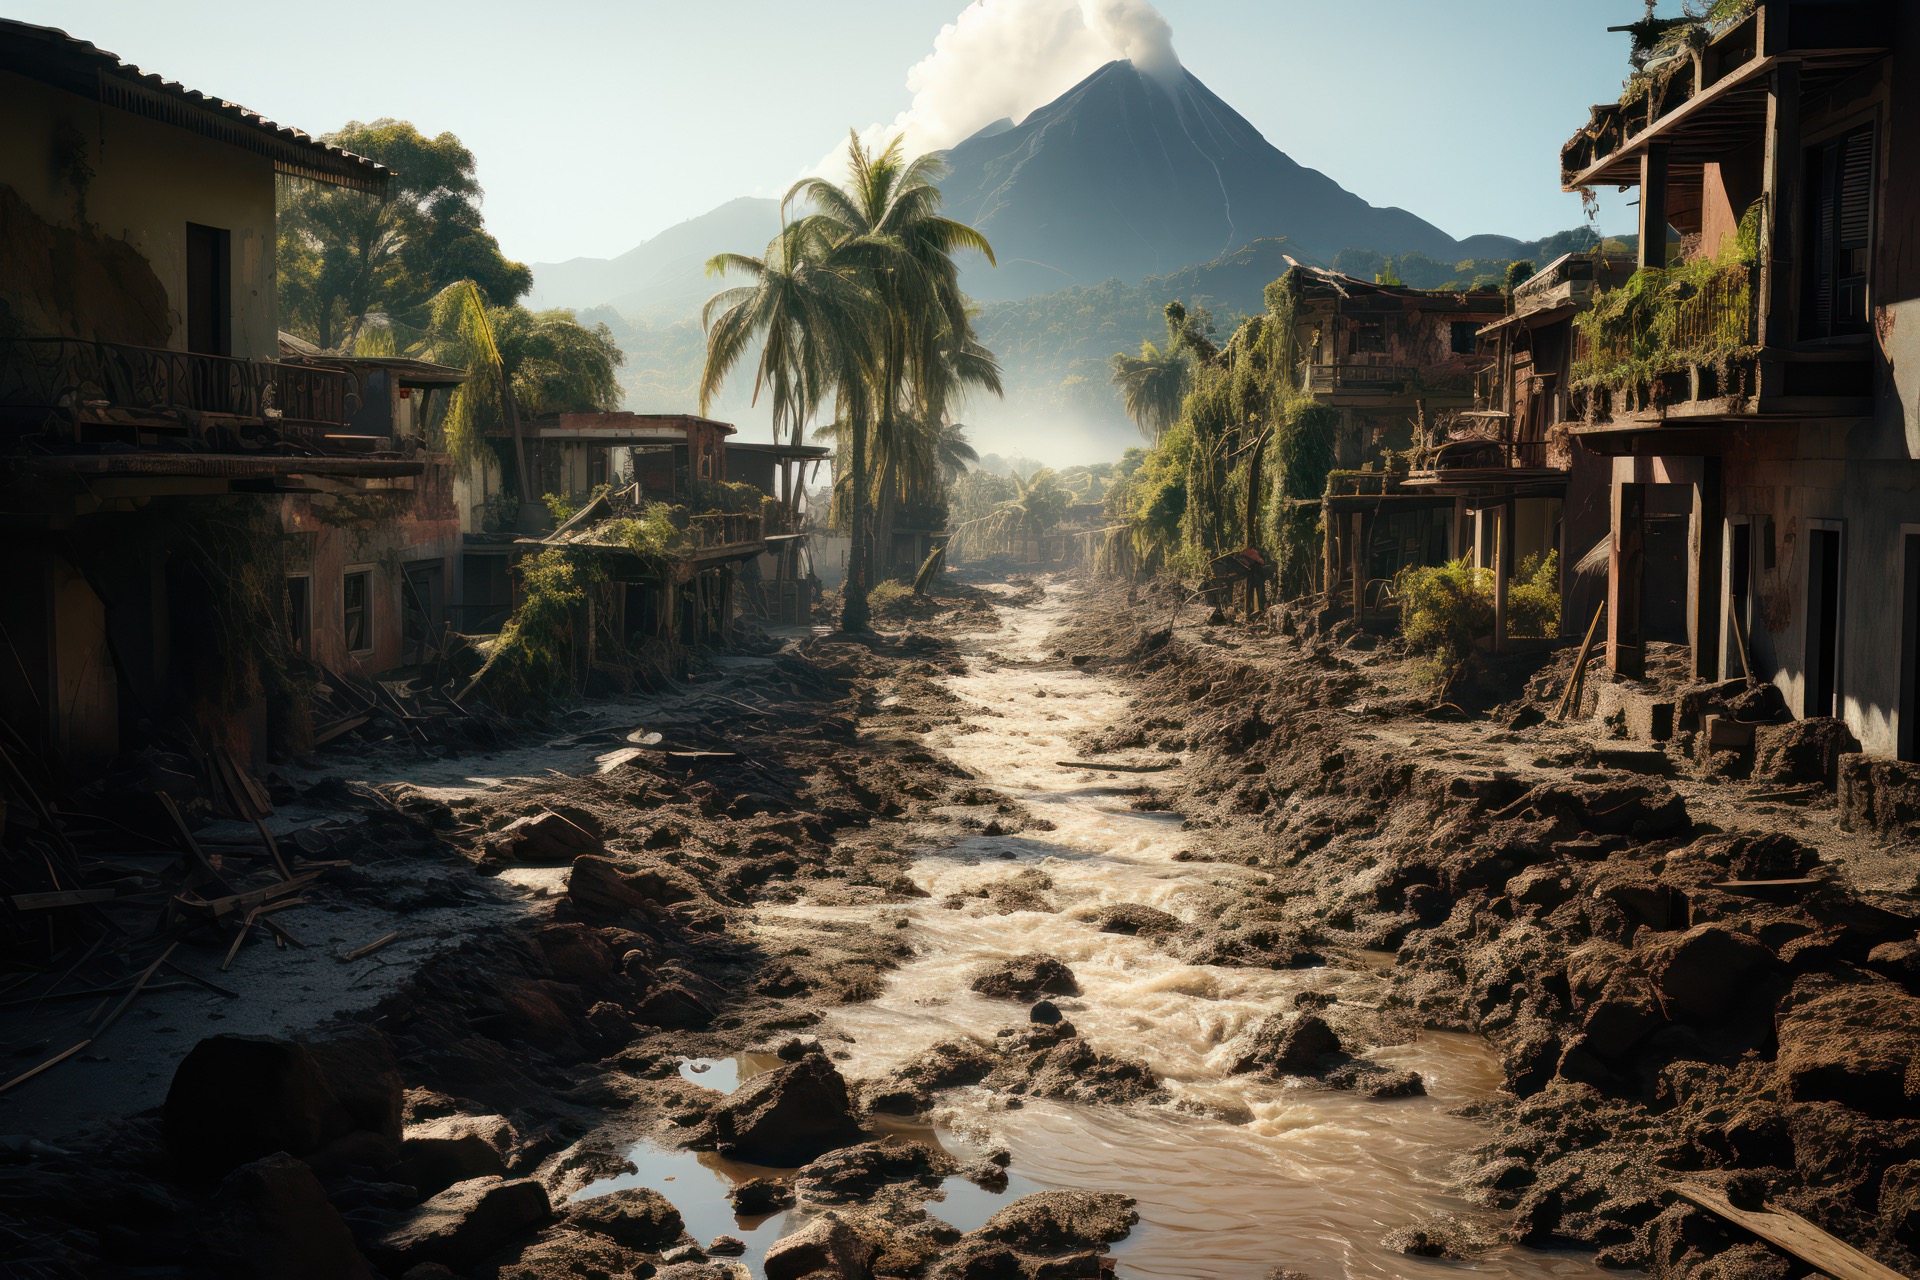 D'importantes coulées de boue se sont échappées du volcan Marapi, en Indonésie, causant de nombreux pertes humaines. © Sébastien, Adobe Stock